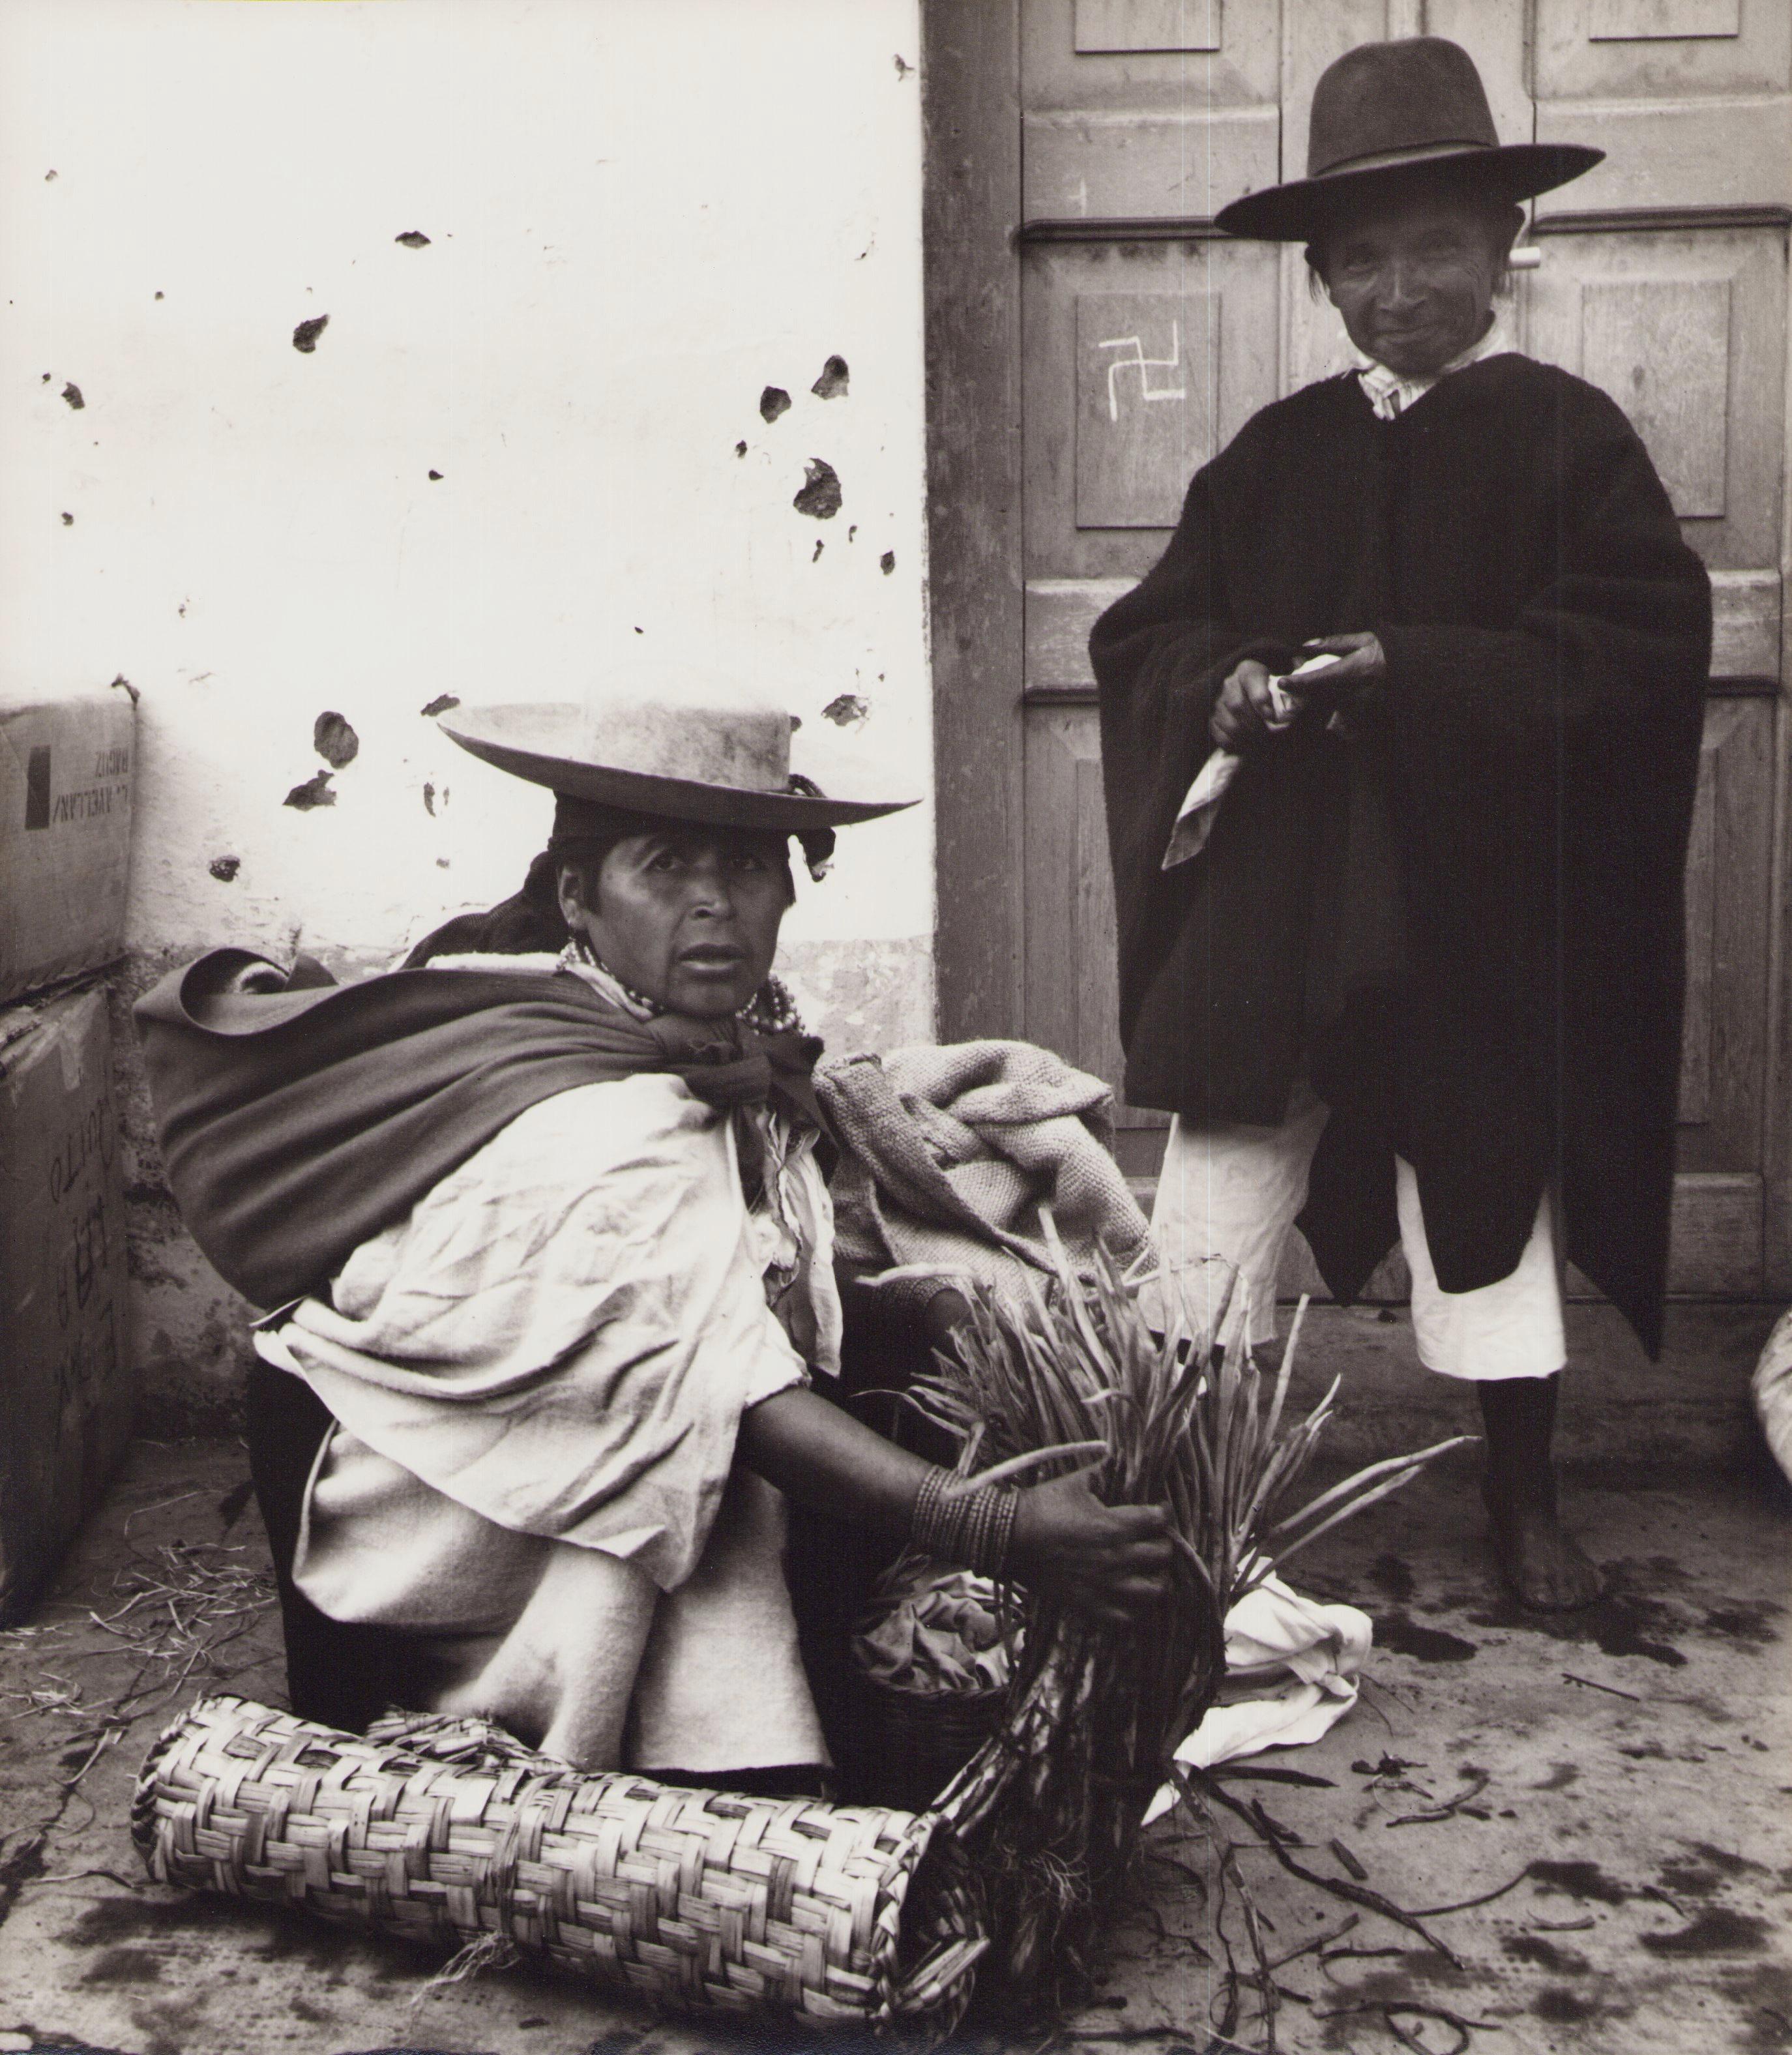 Black and White Photograph Hanna Seidel - Équateur, vendeur, marché, photographie en noir et blanc, années 1960, 23,4 x 16,8 cm